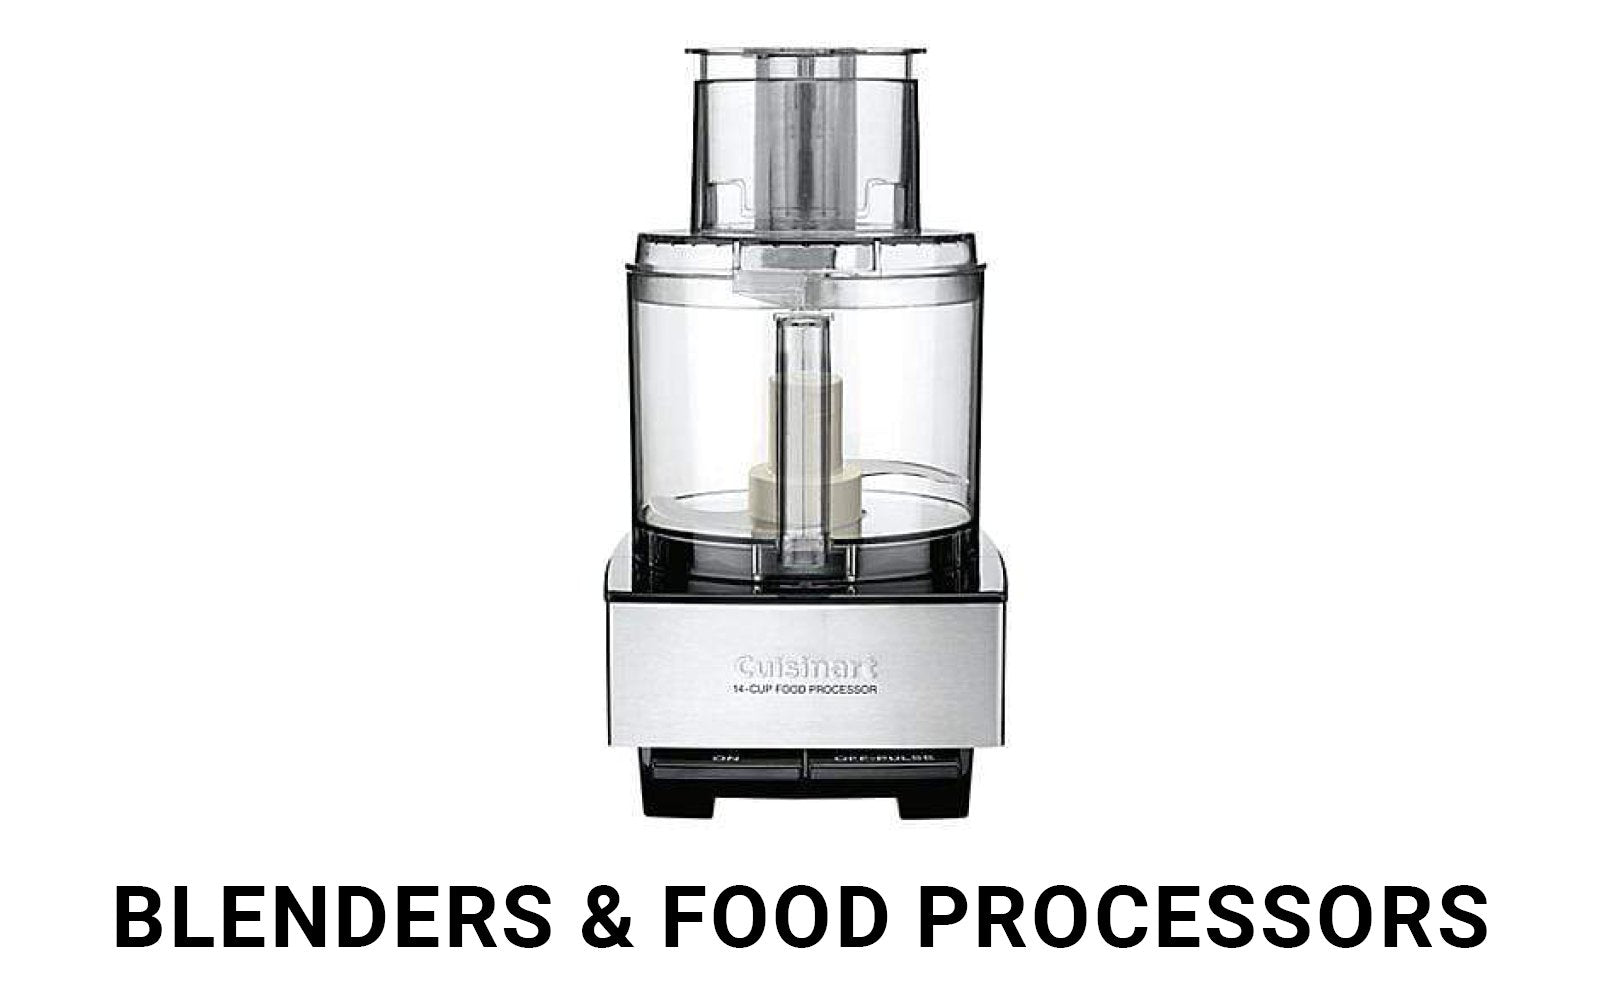 Blenders & Food Processors